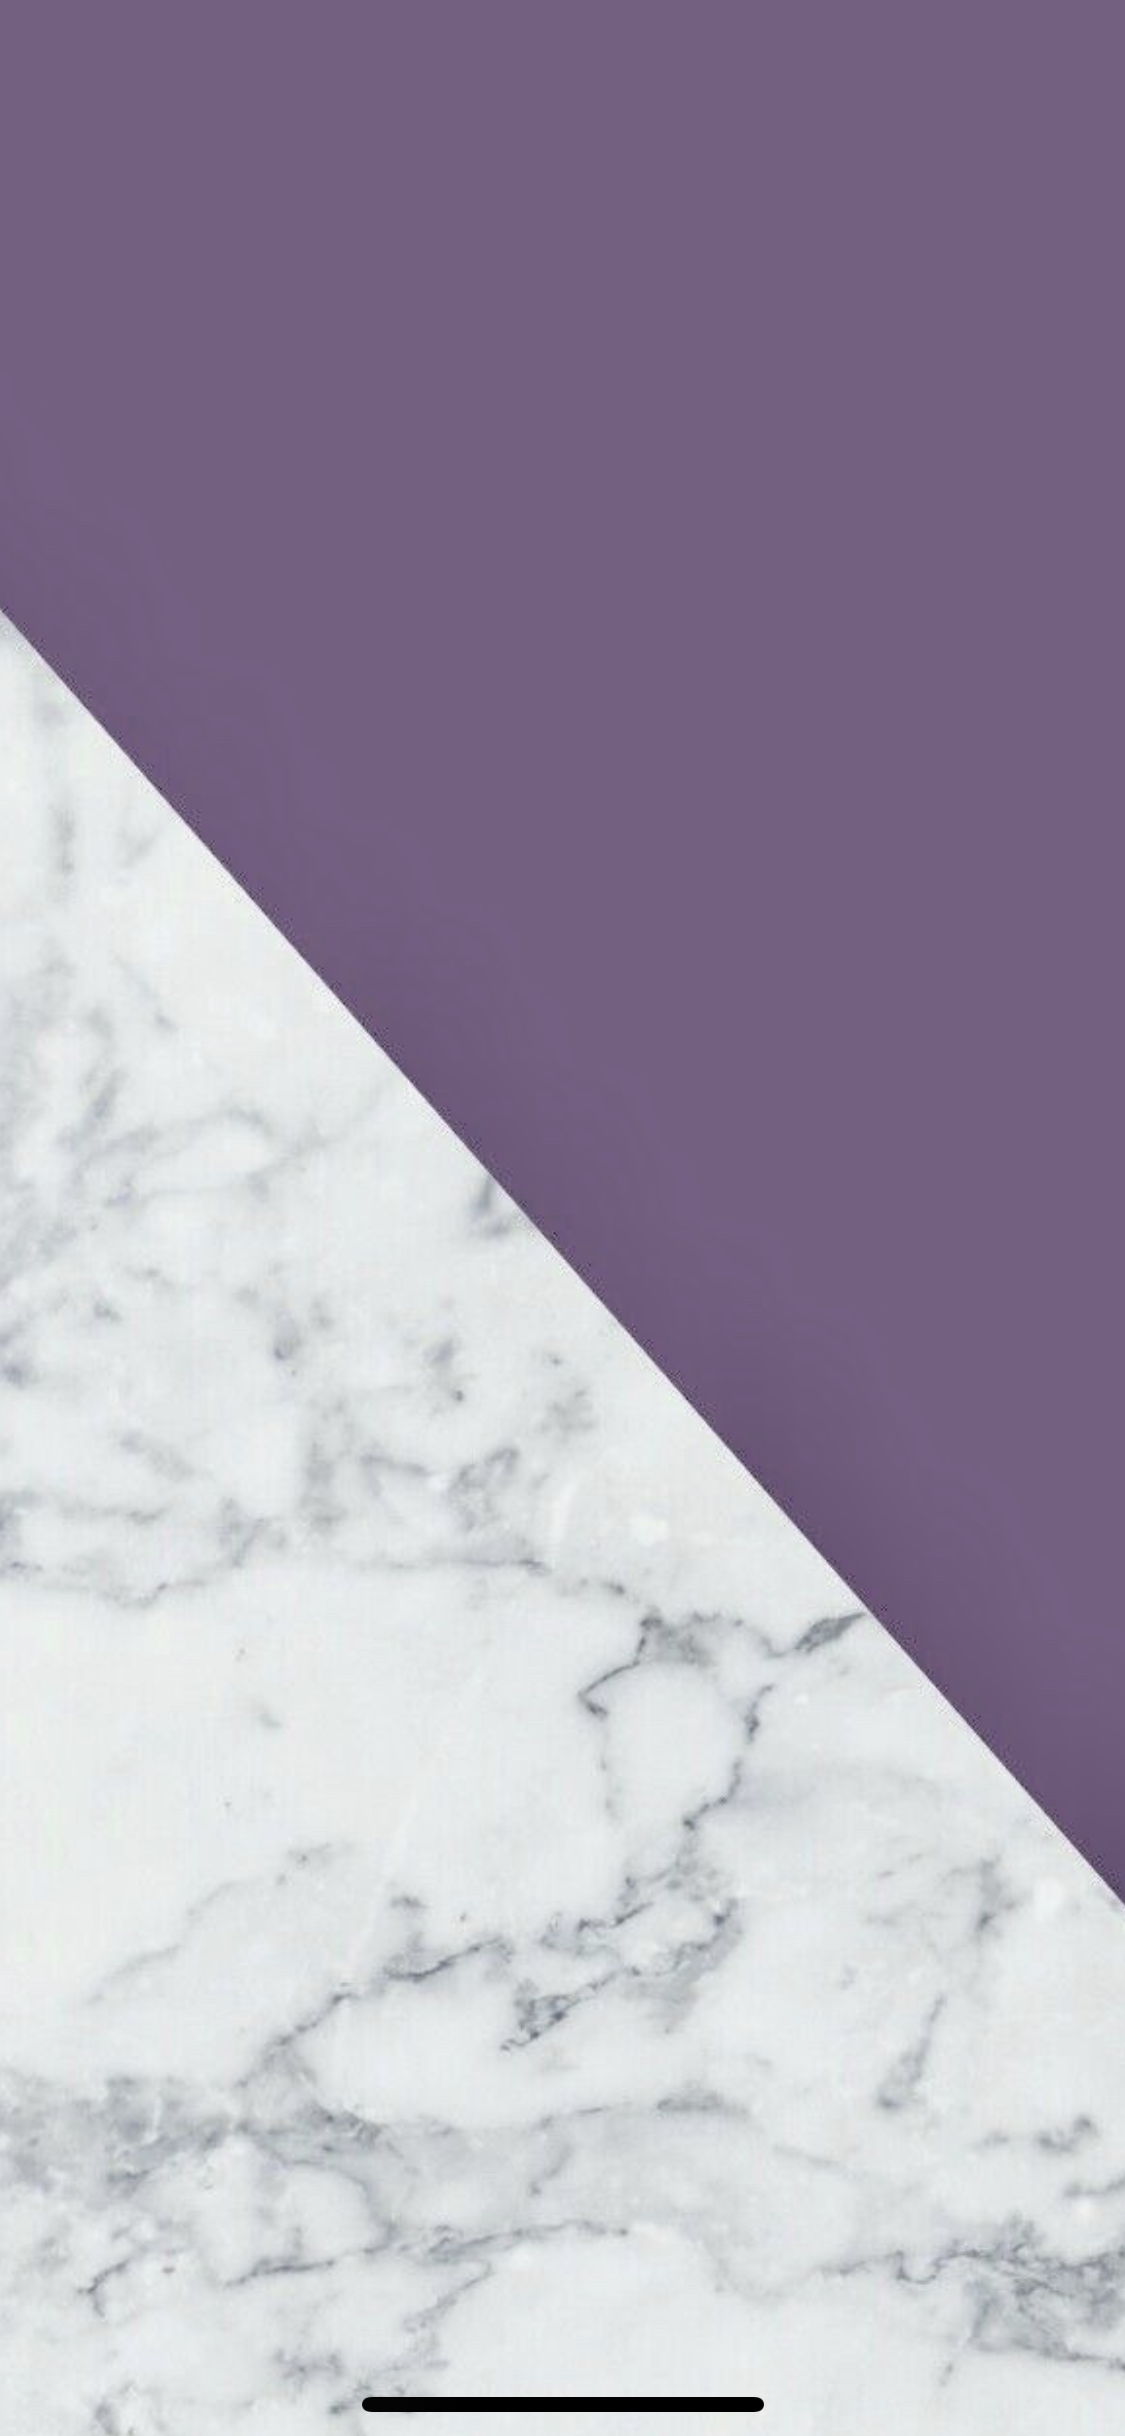 Dusty purple marble wallpaper. Marble wallpaper, Purple wallpaper iphone, Purple marble